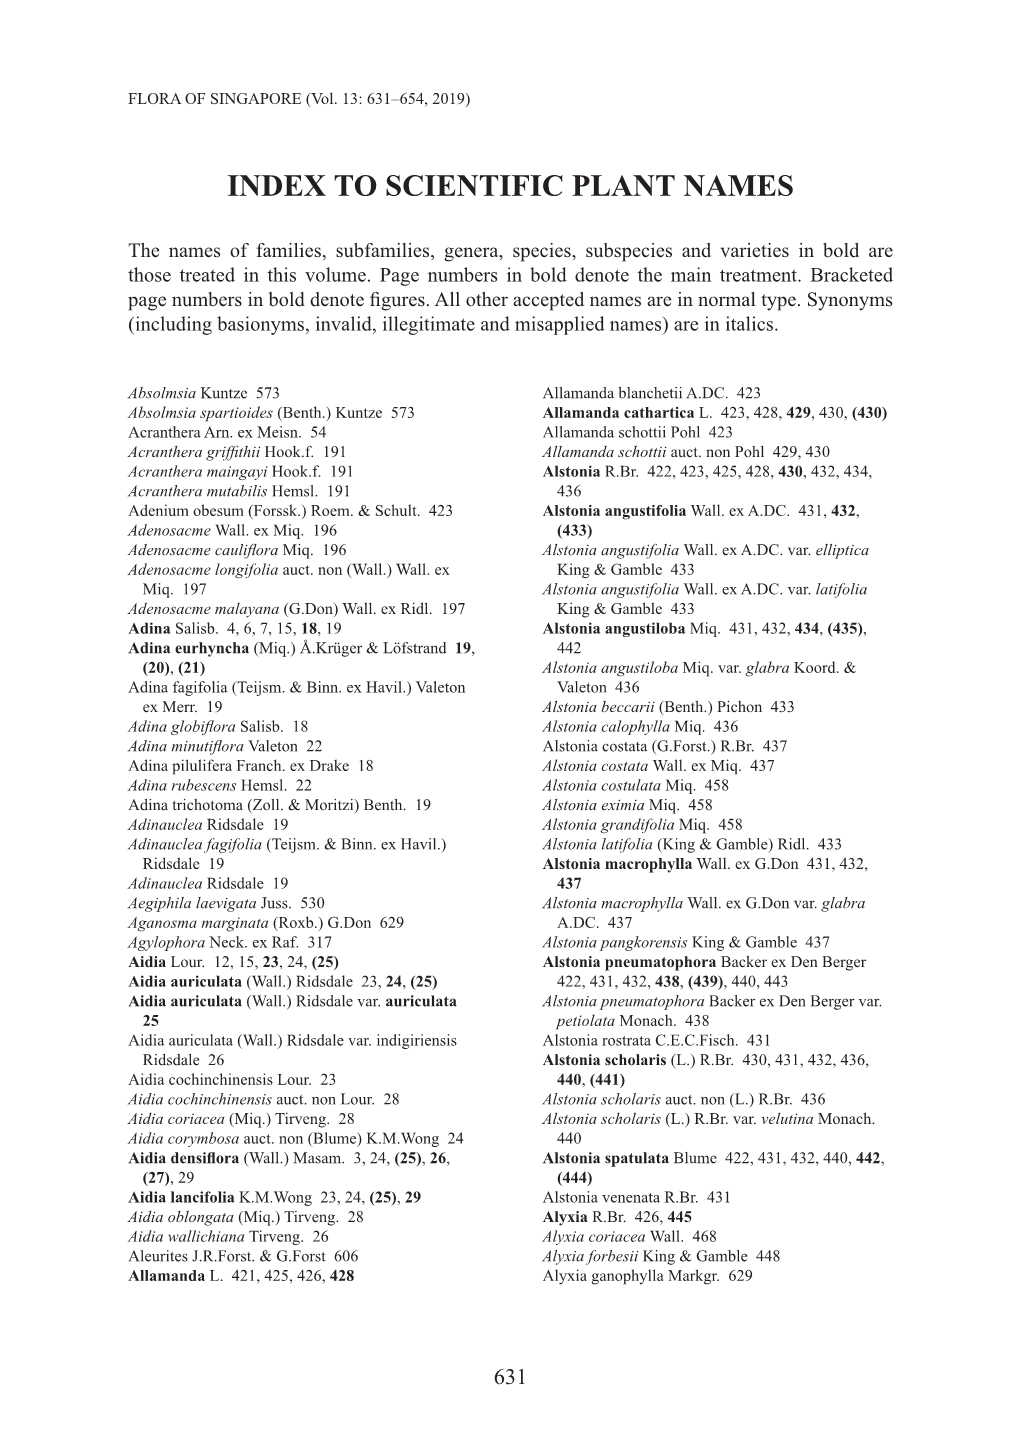 Index to Scientific Plant Names